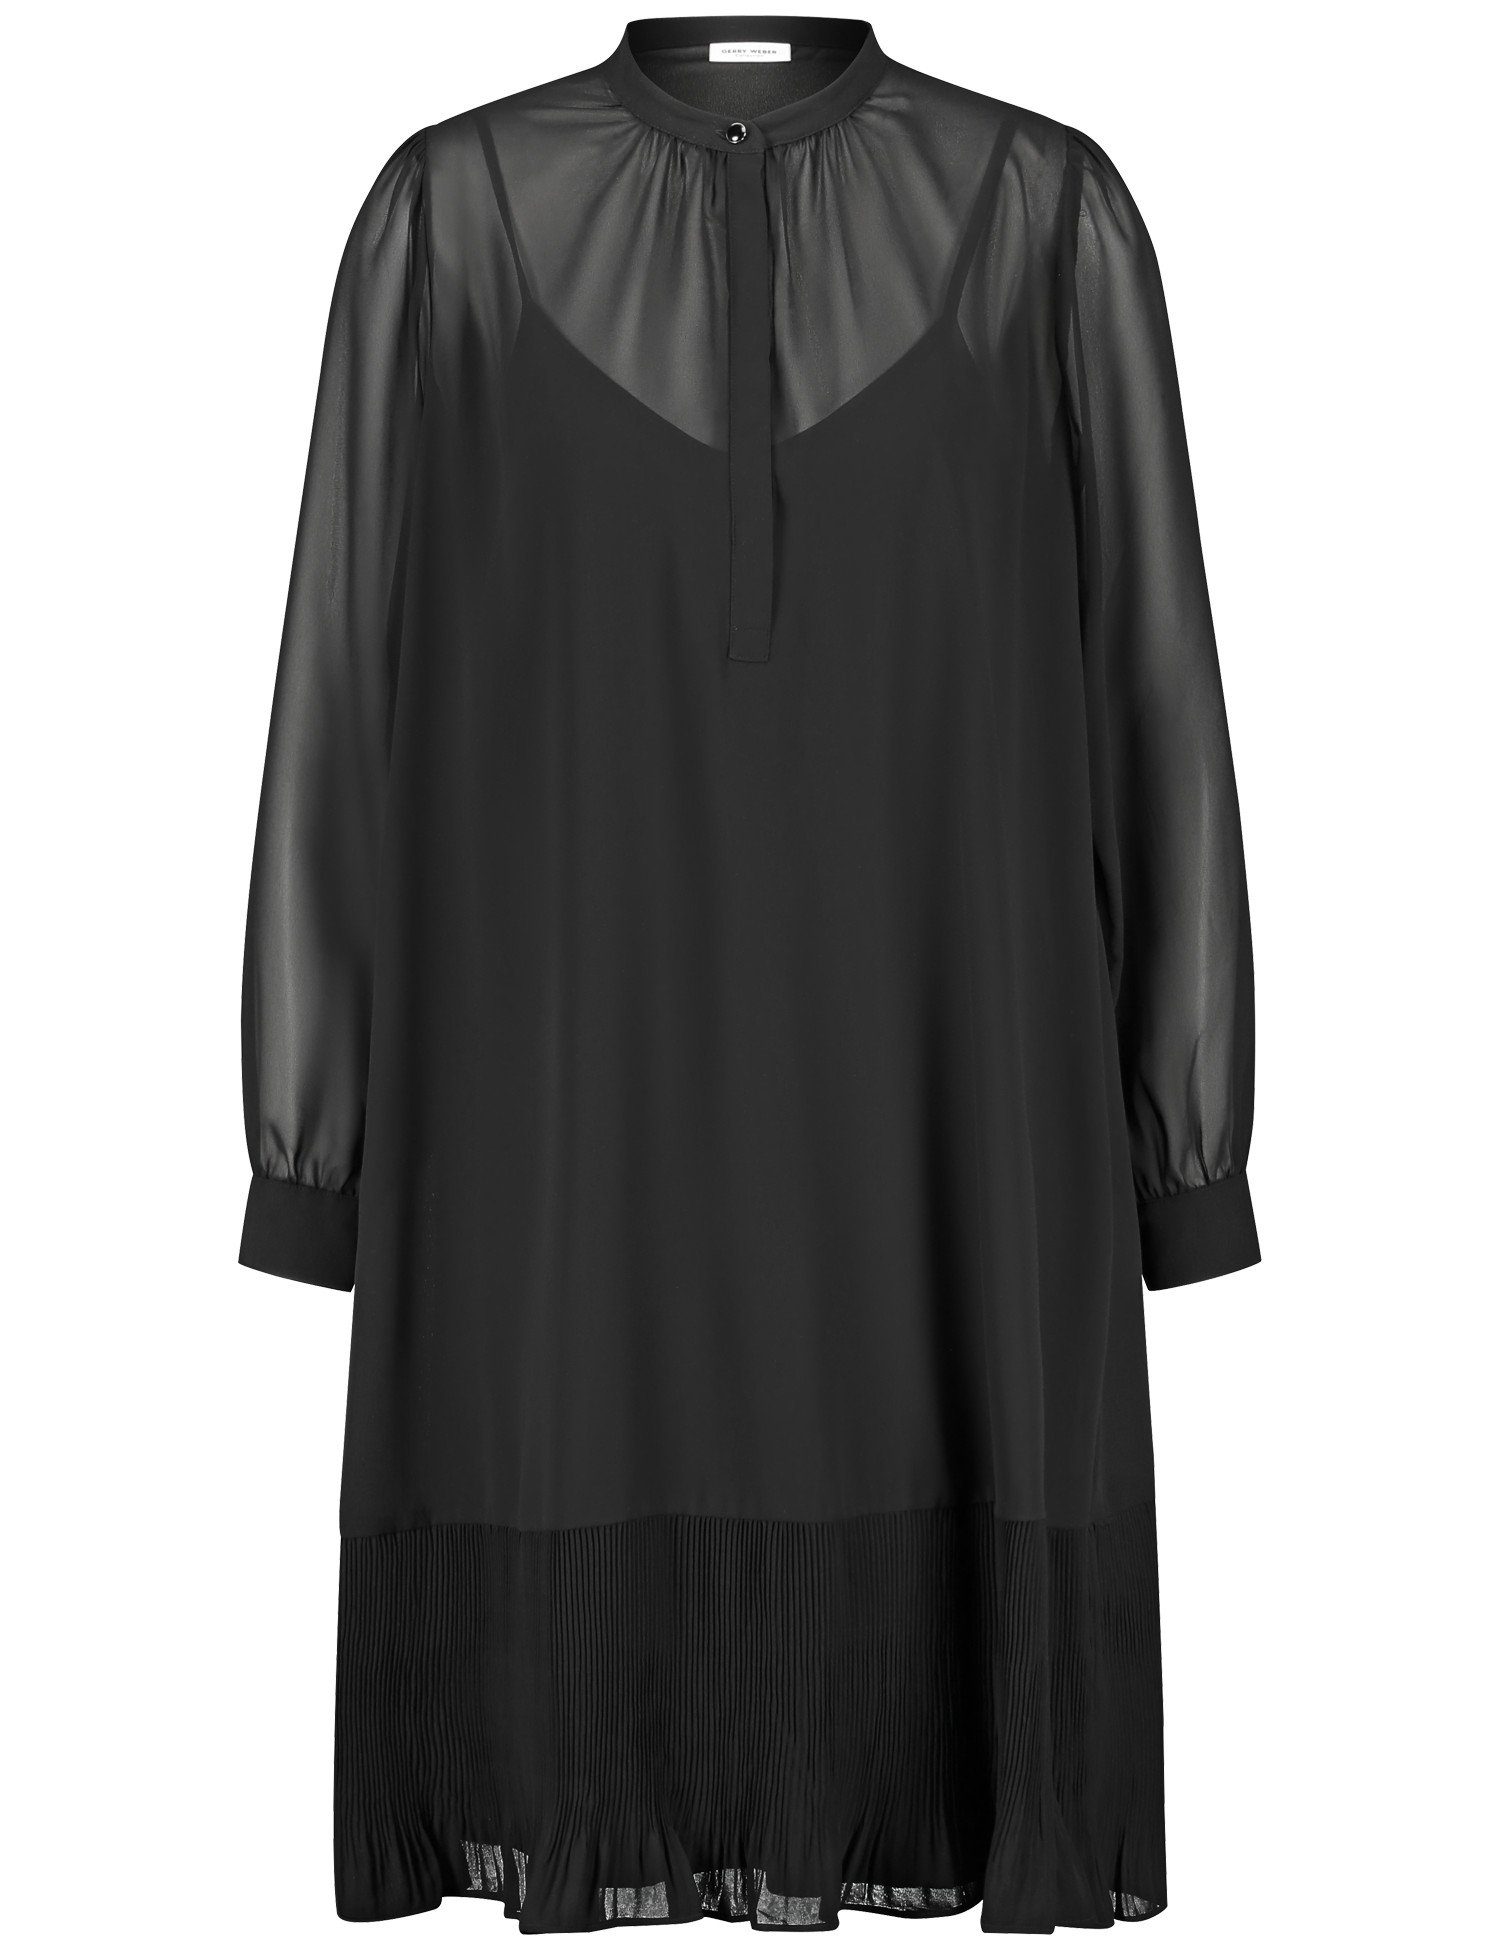 GERRY WEBER Midikleid mit Zartes Schwarz Overlayer Kleid semitransparentem